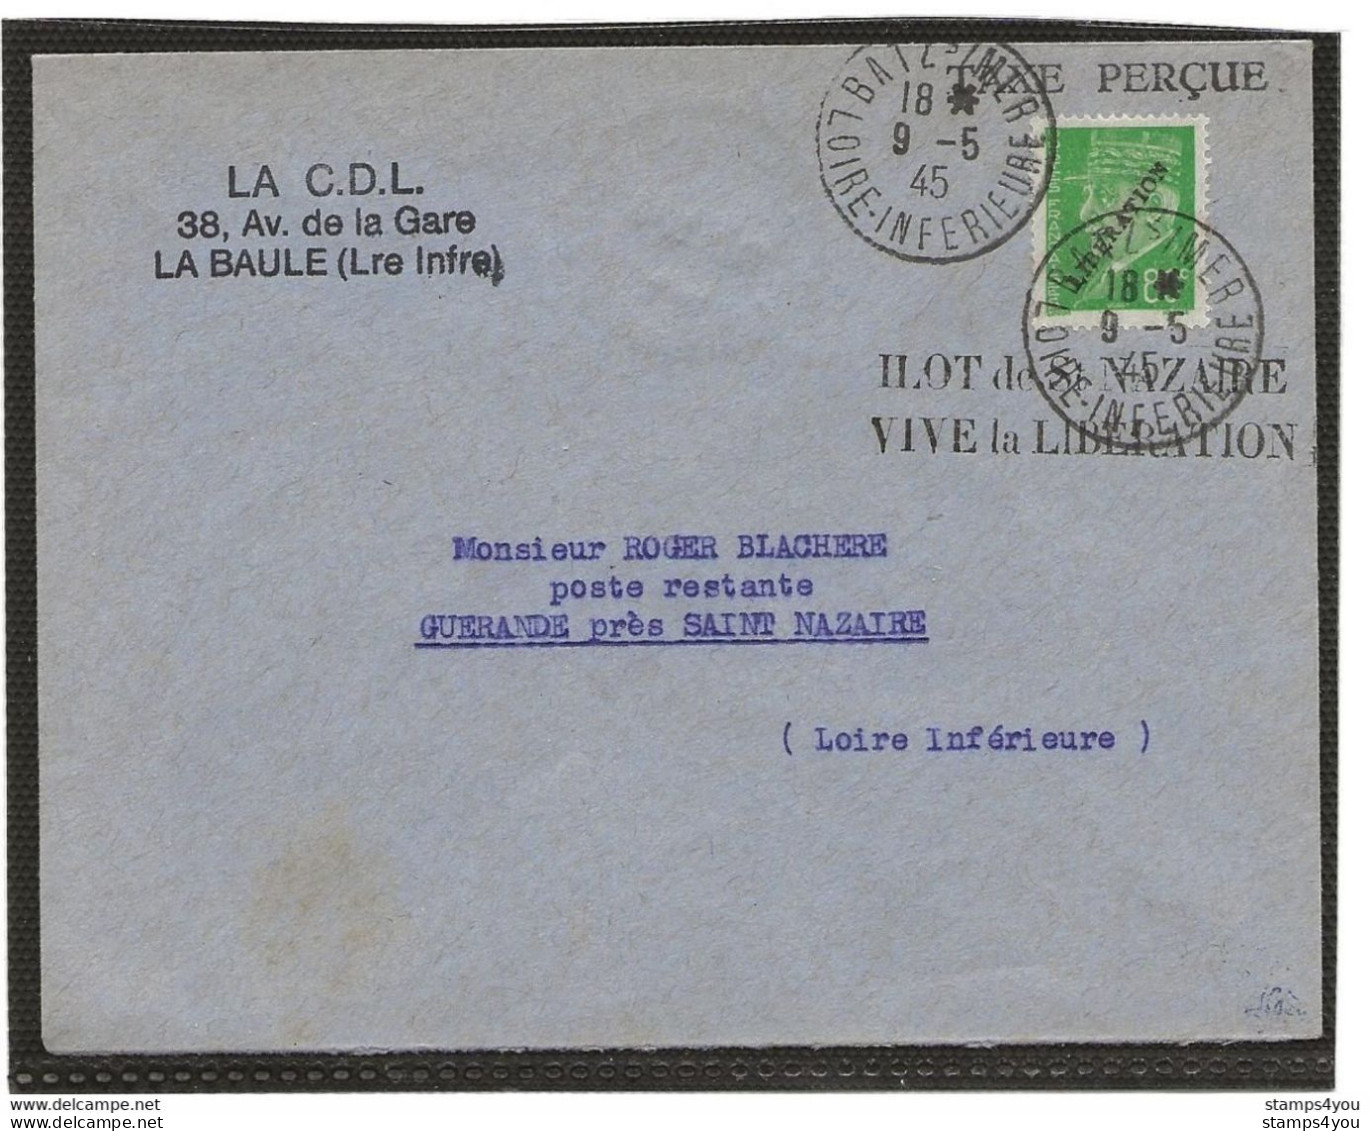 150 - 76 - Superbe Enveloppe Avec Timbre Libération - Ilot De St Nazaire Vive La Libération 19.5.1945 - 2. Weltkrieg